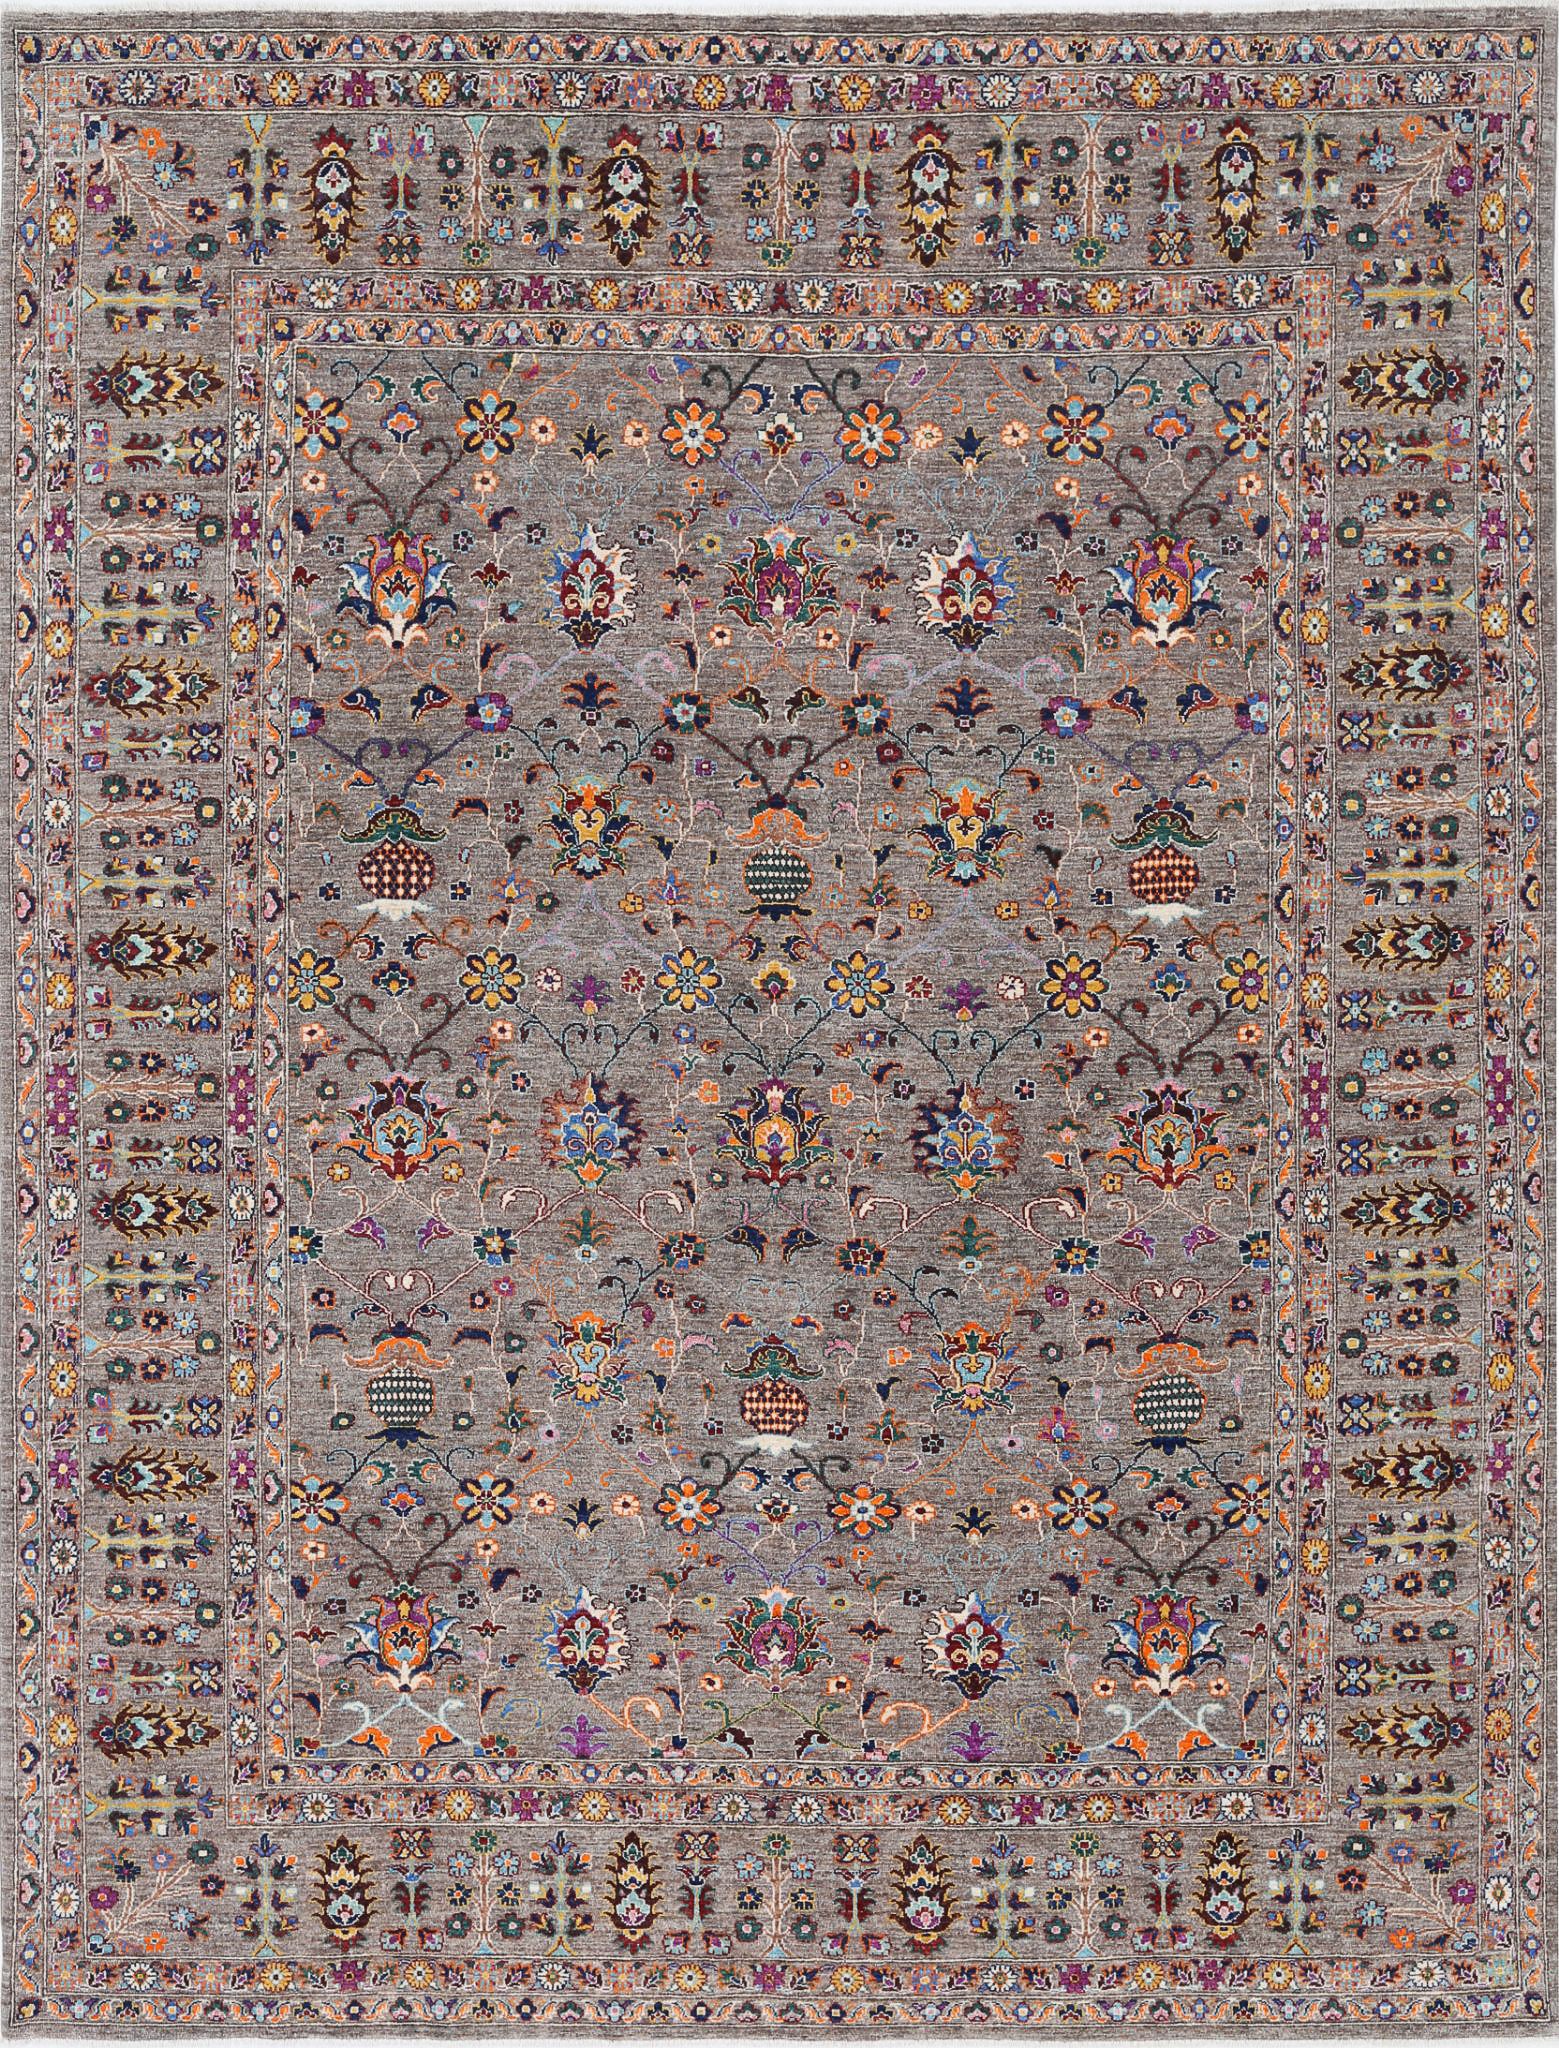 Jasmine-hand-knotted-sultani-wool-rug-5024924.jpg